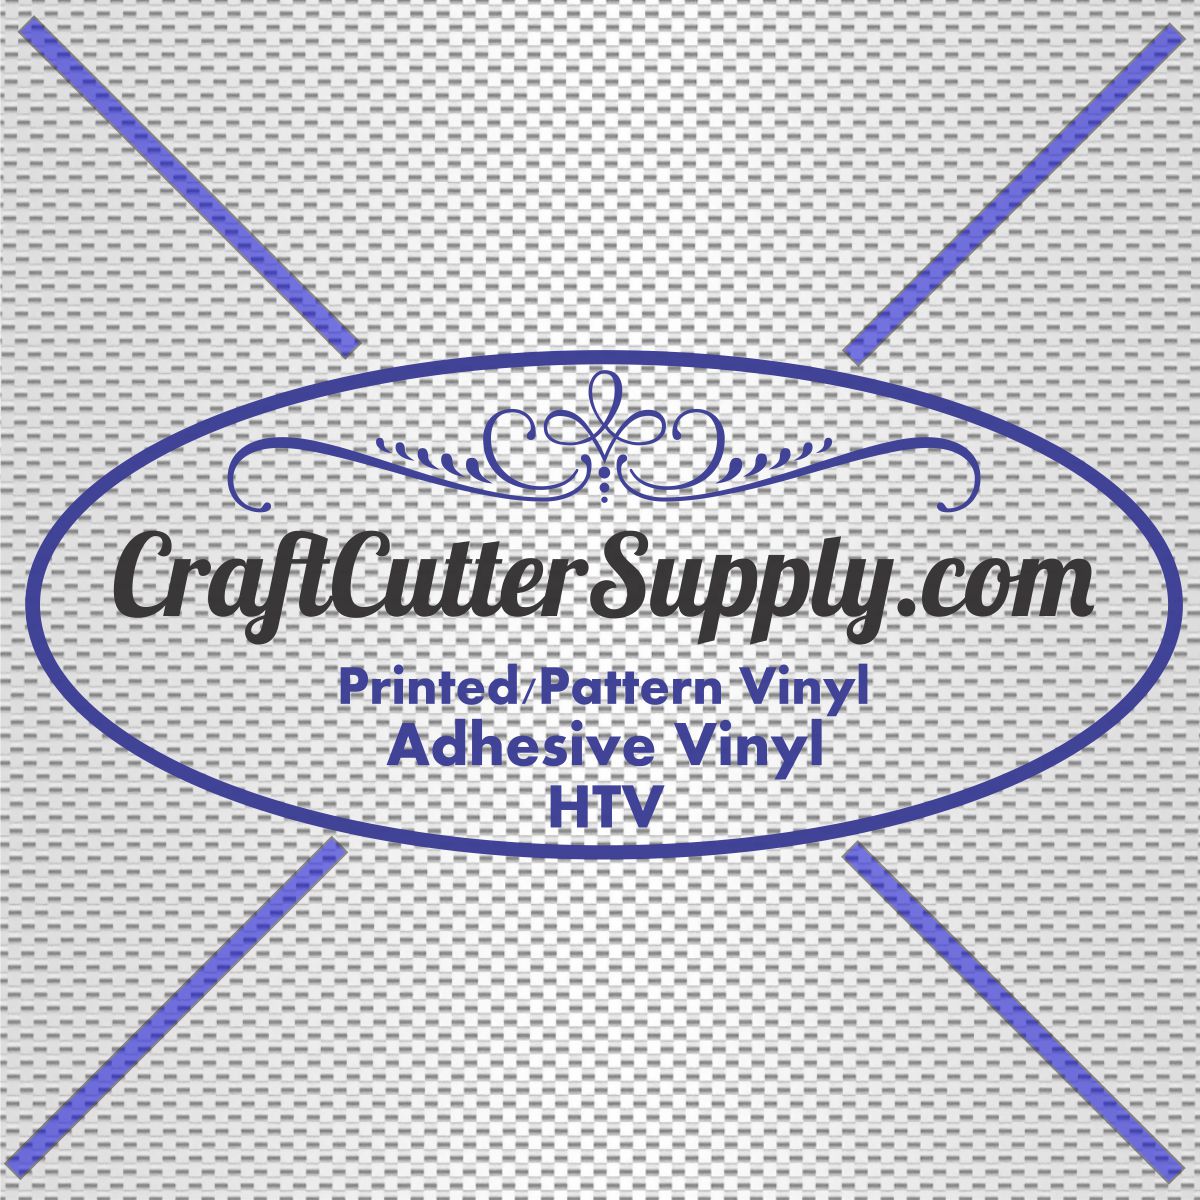 White Carbon Fiber 12x12 - CraftCutterSupply.com